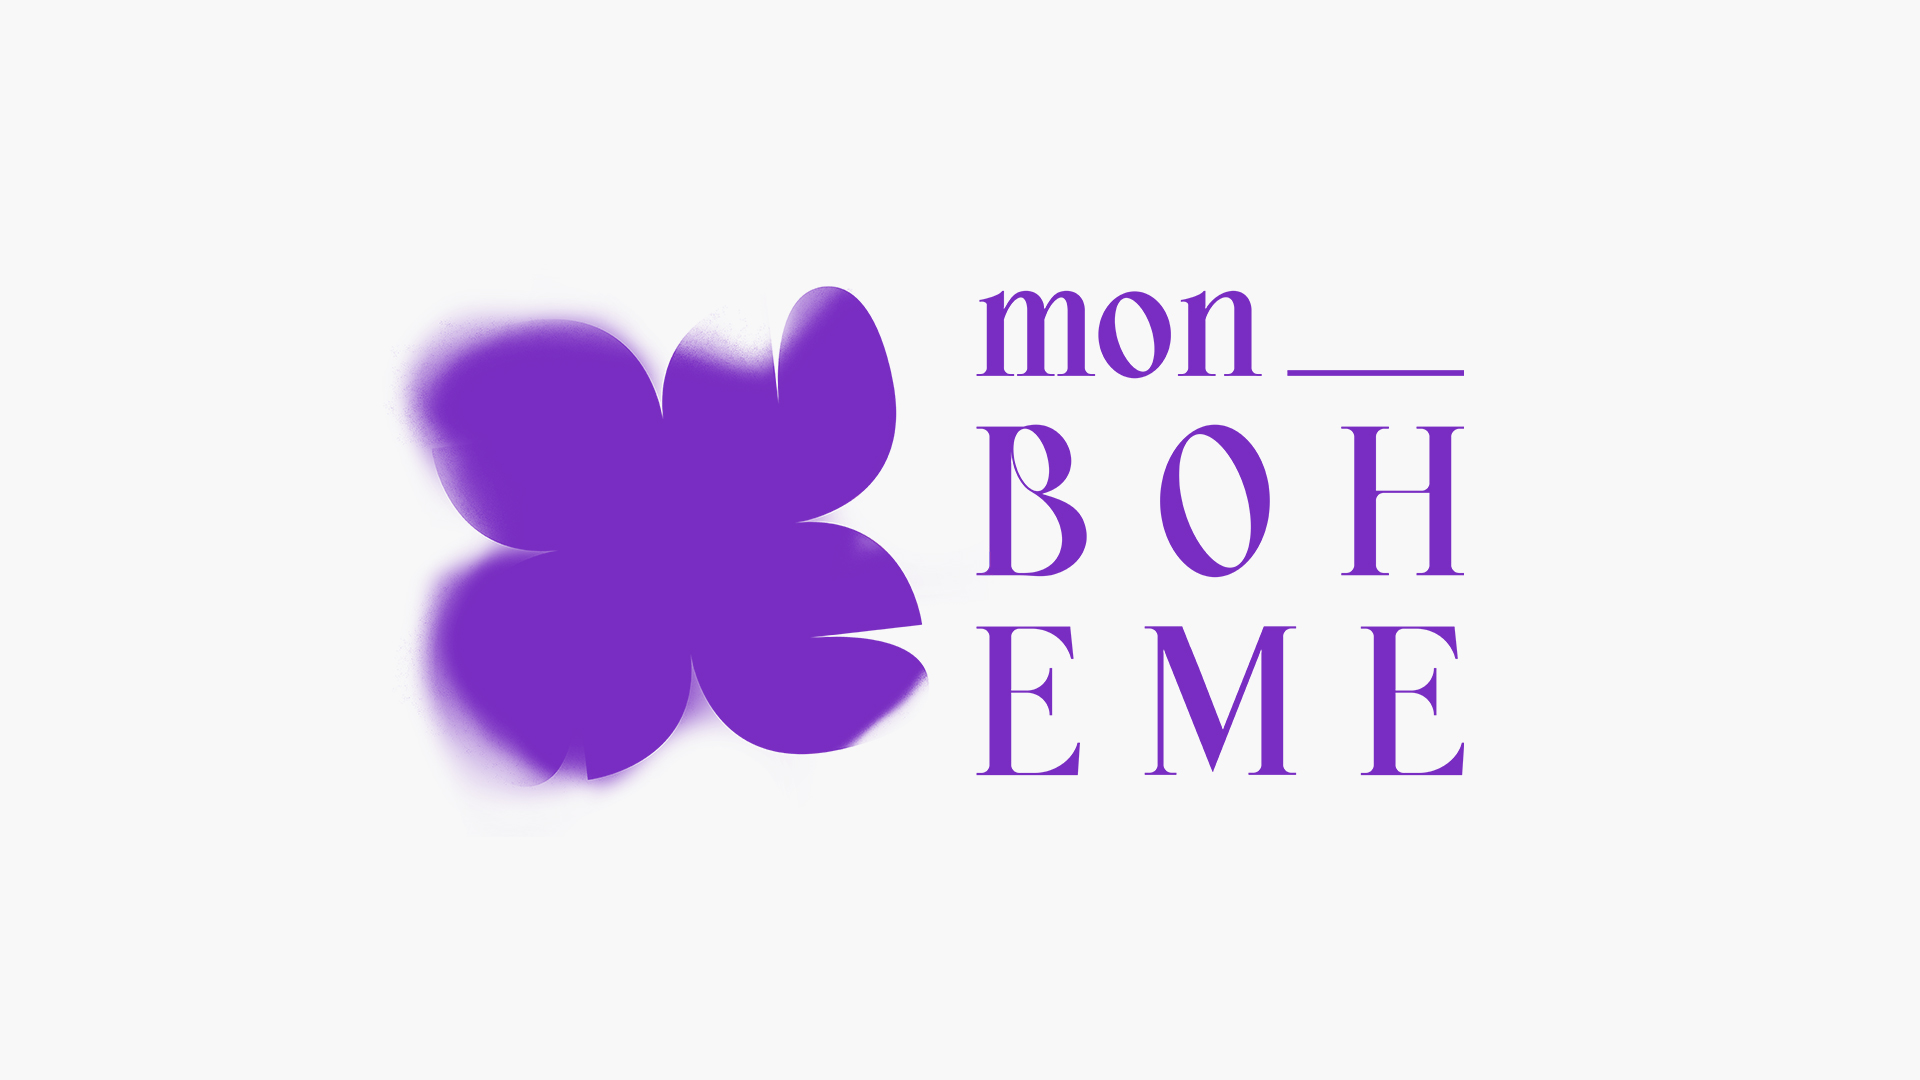 Das digitale Logo der Ausstellung besteht aus dem Shortcut mon_boheme und einer der aufgesprühten Blumen in Lila.